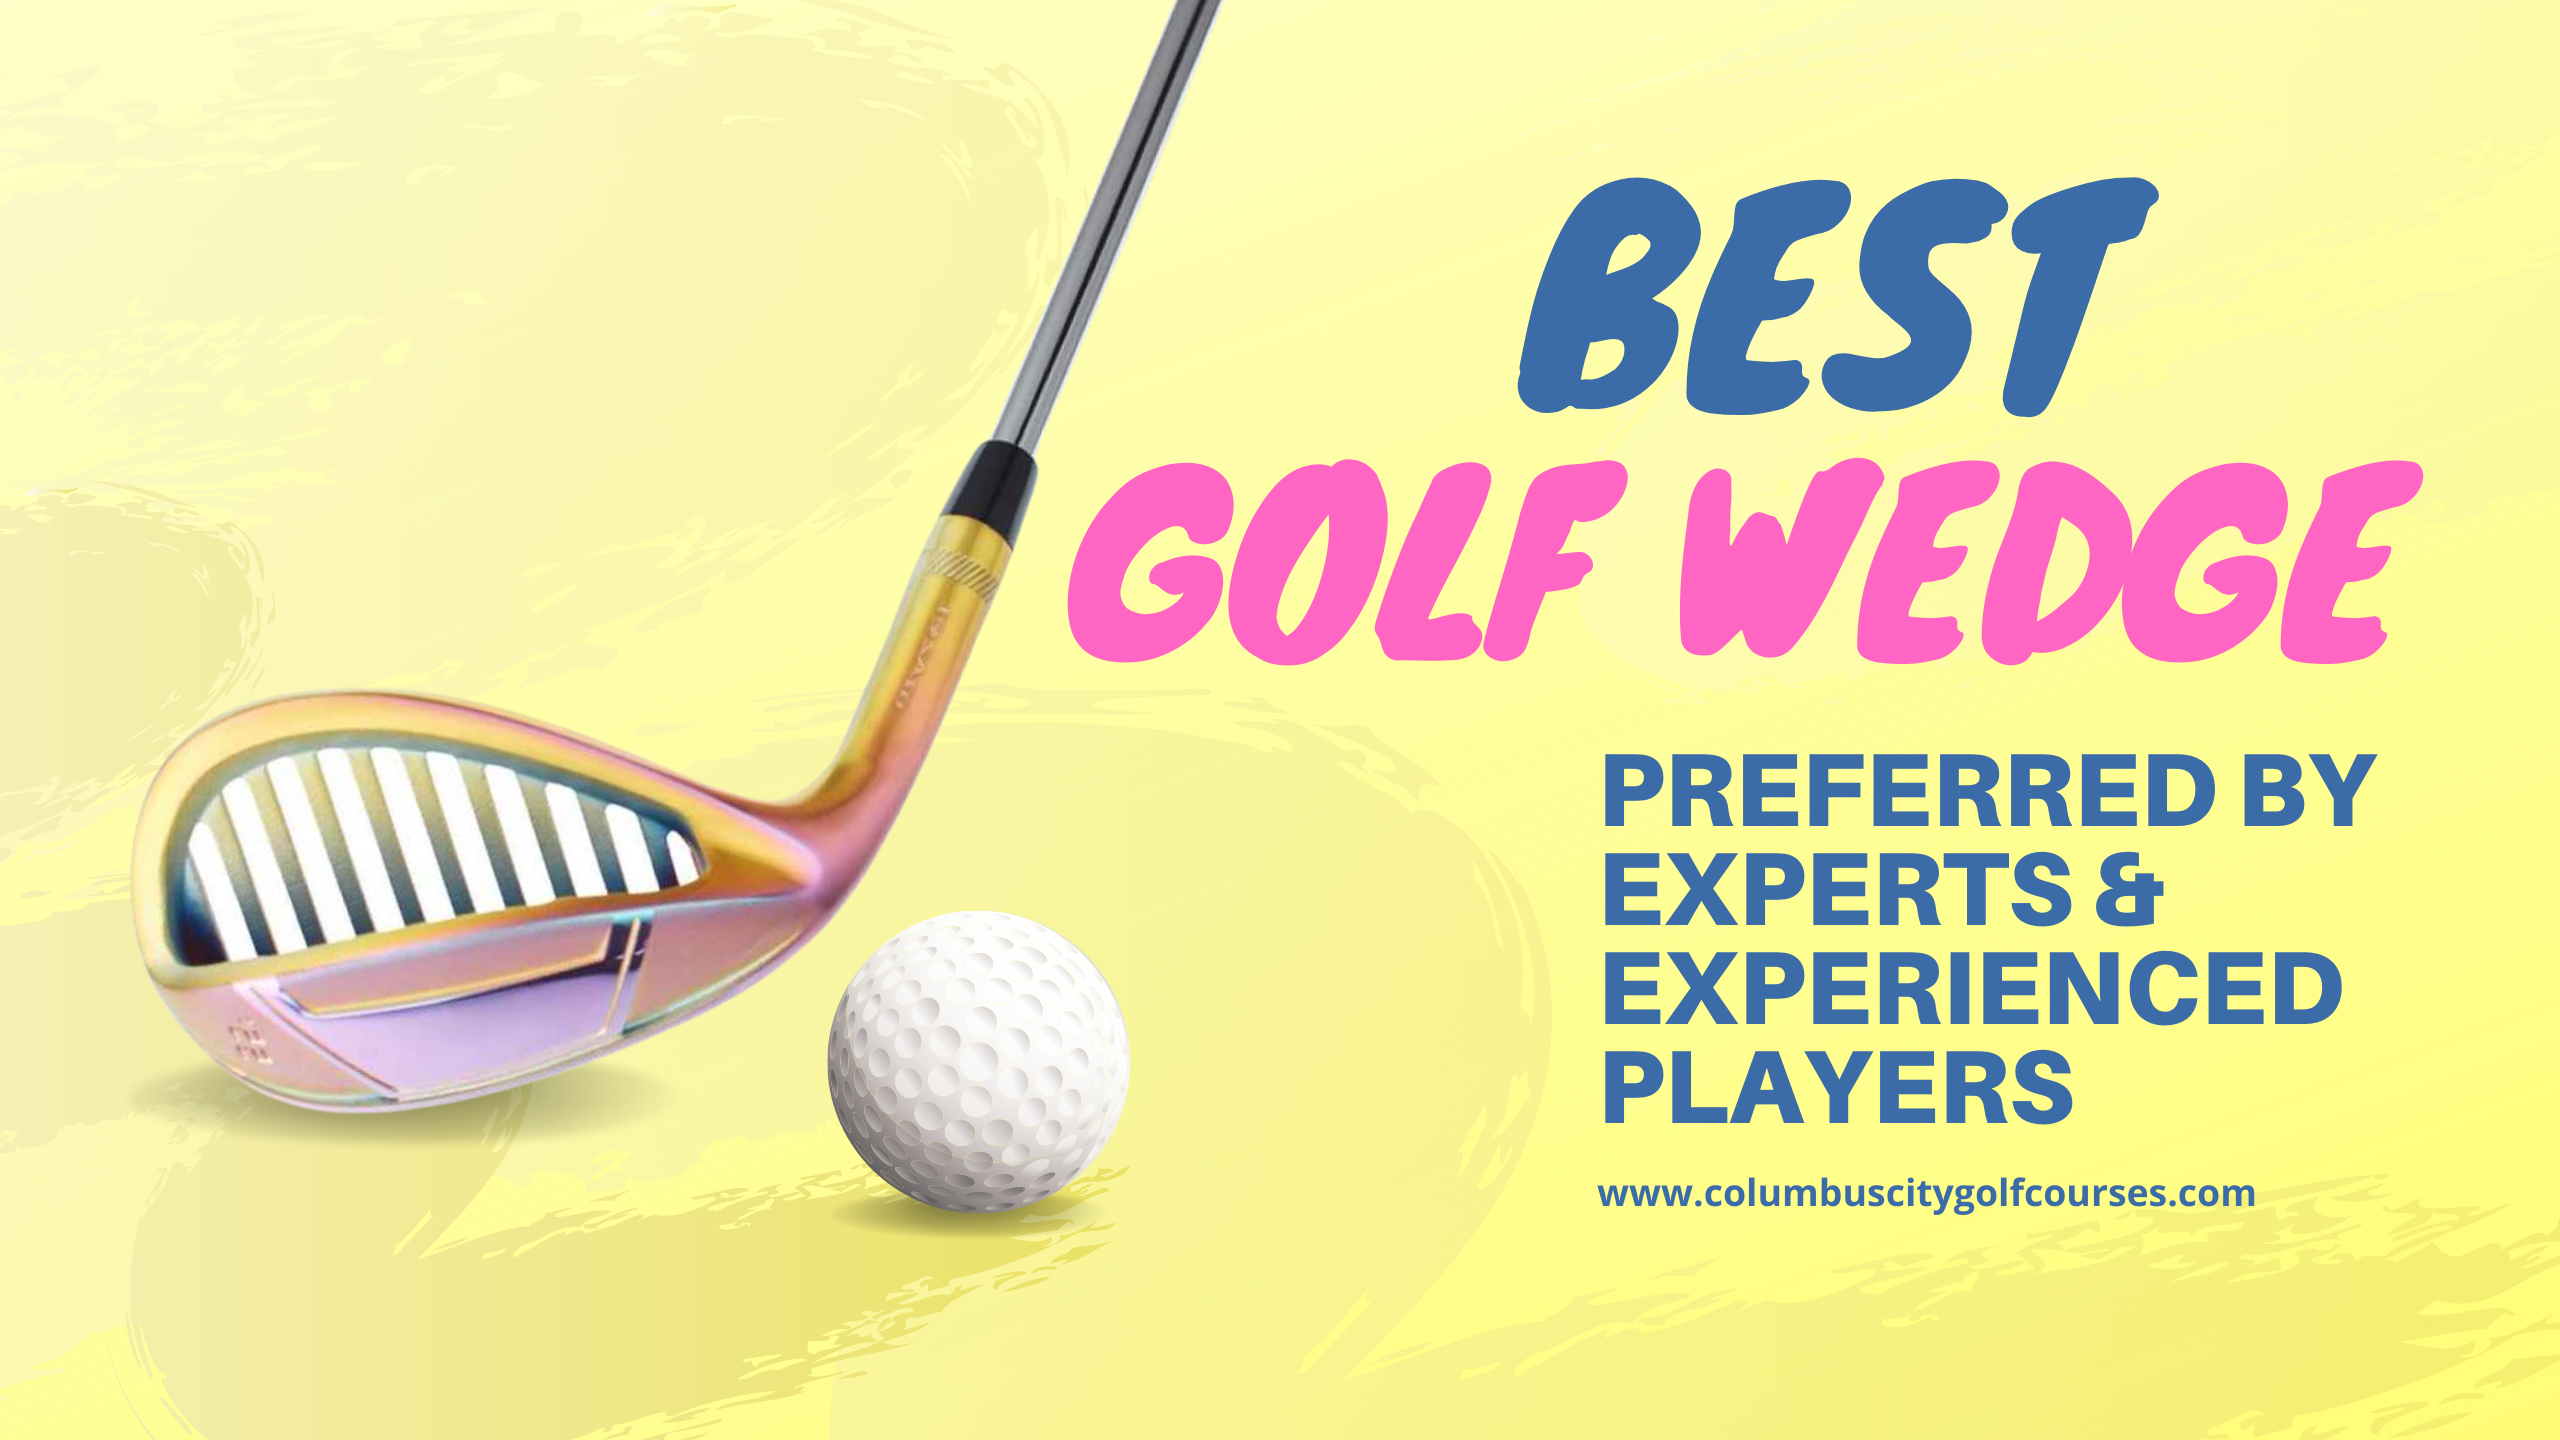 Best Golf Wedge